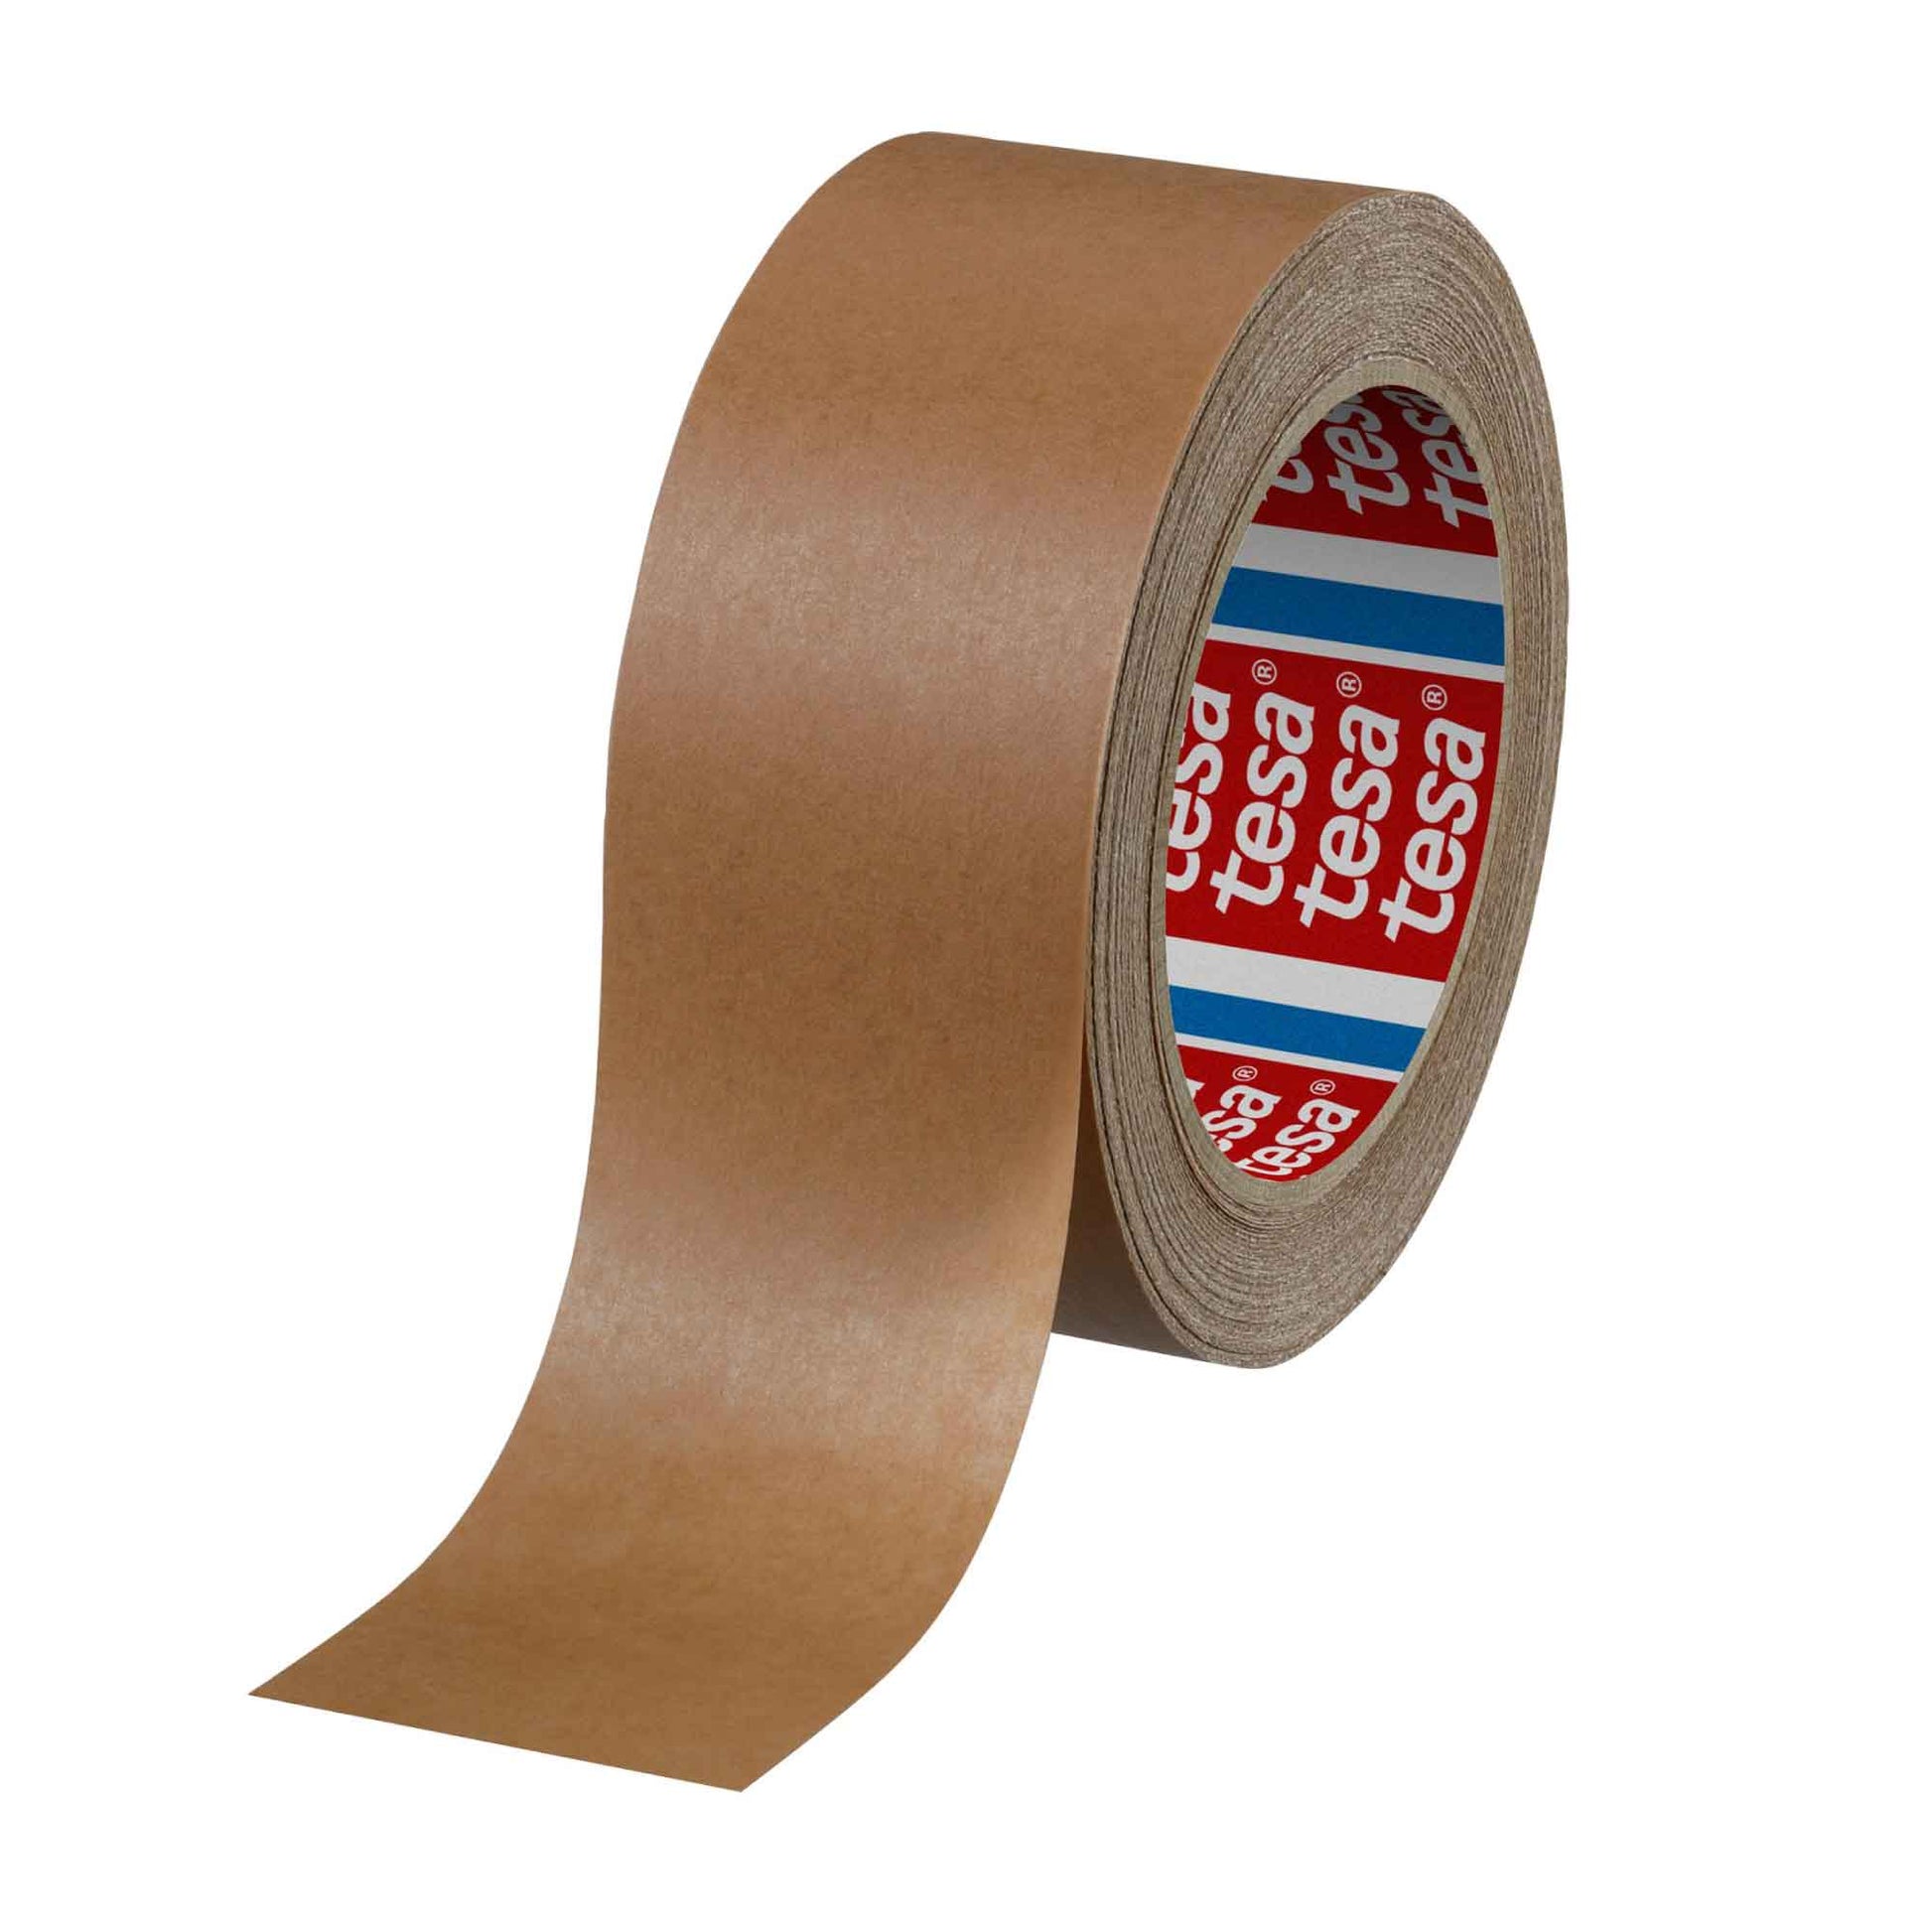 1x Eco Packing Tape 48mmx50m - Brown Kraft Paper Carton Sealing Tesa 4313